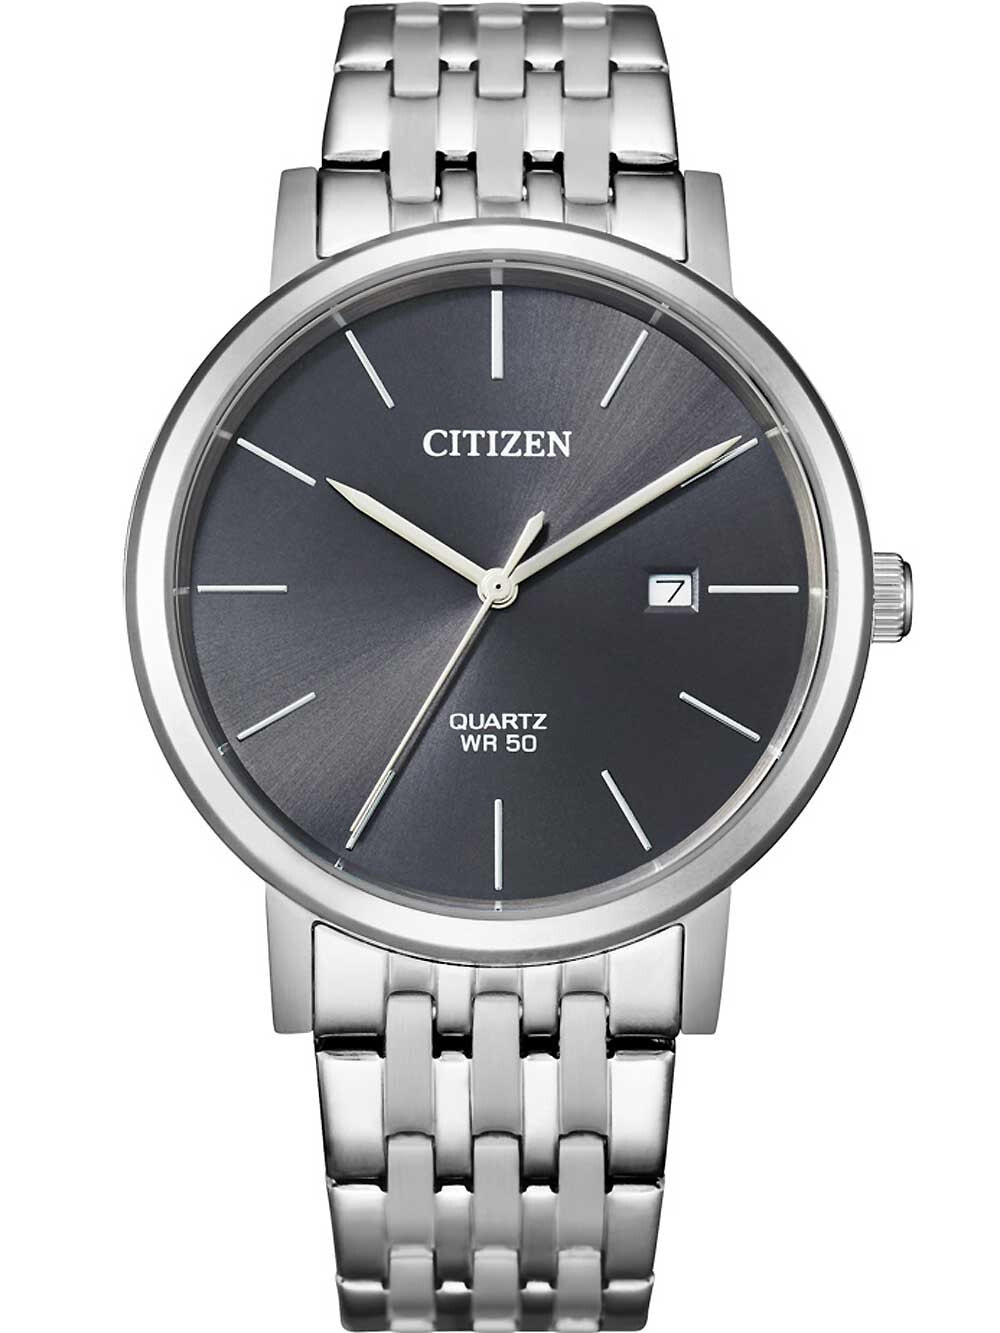 Мужские наручные часы с серебряным браслетом Citizen BI5070-57H Sport mens quartz 40mm 5ATM